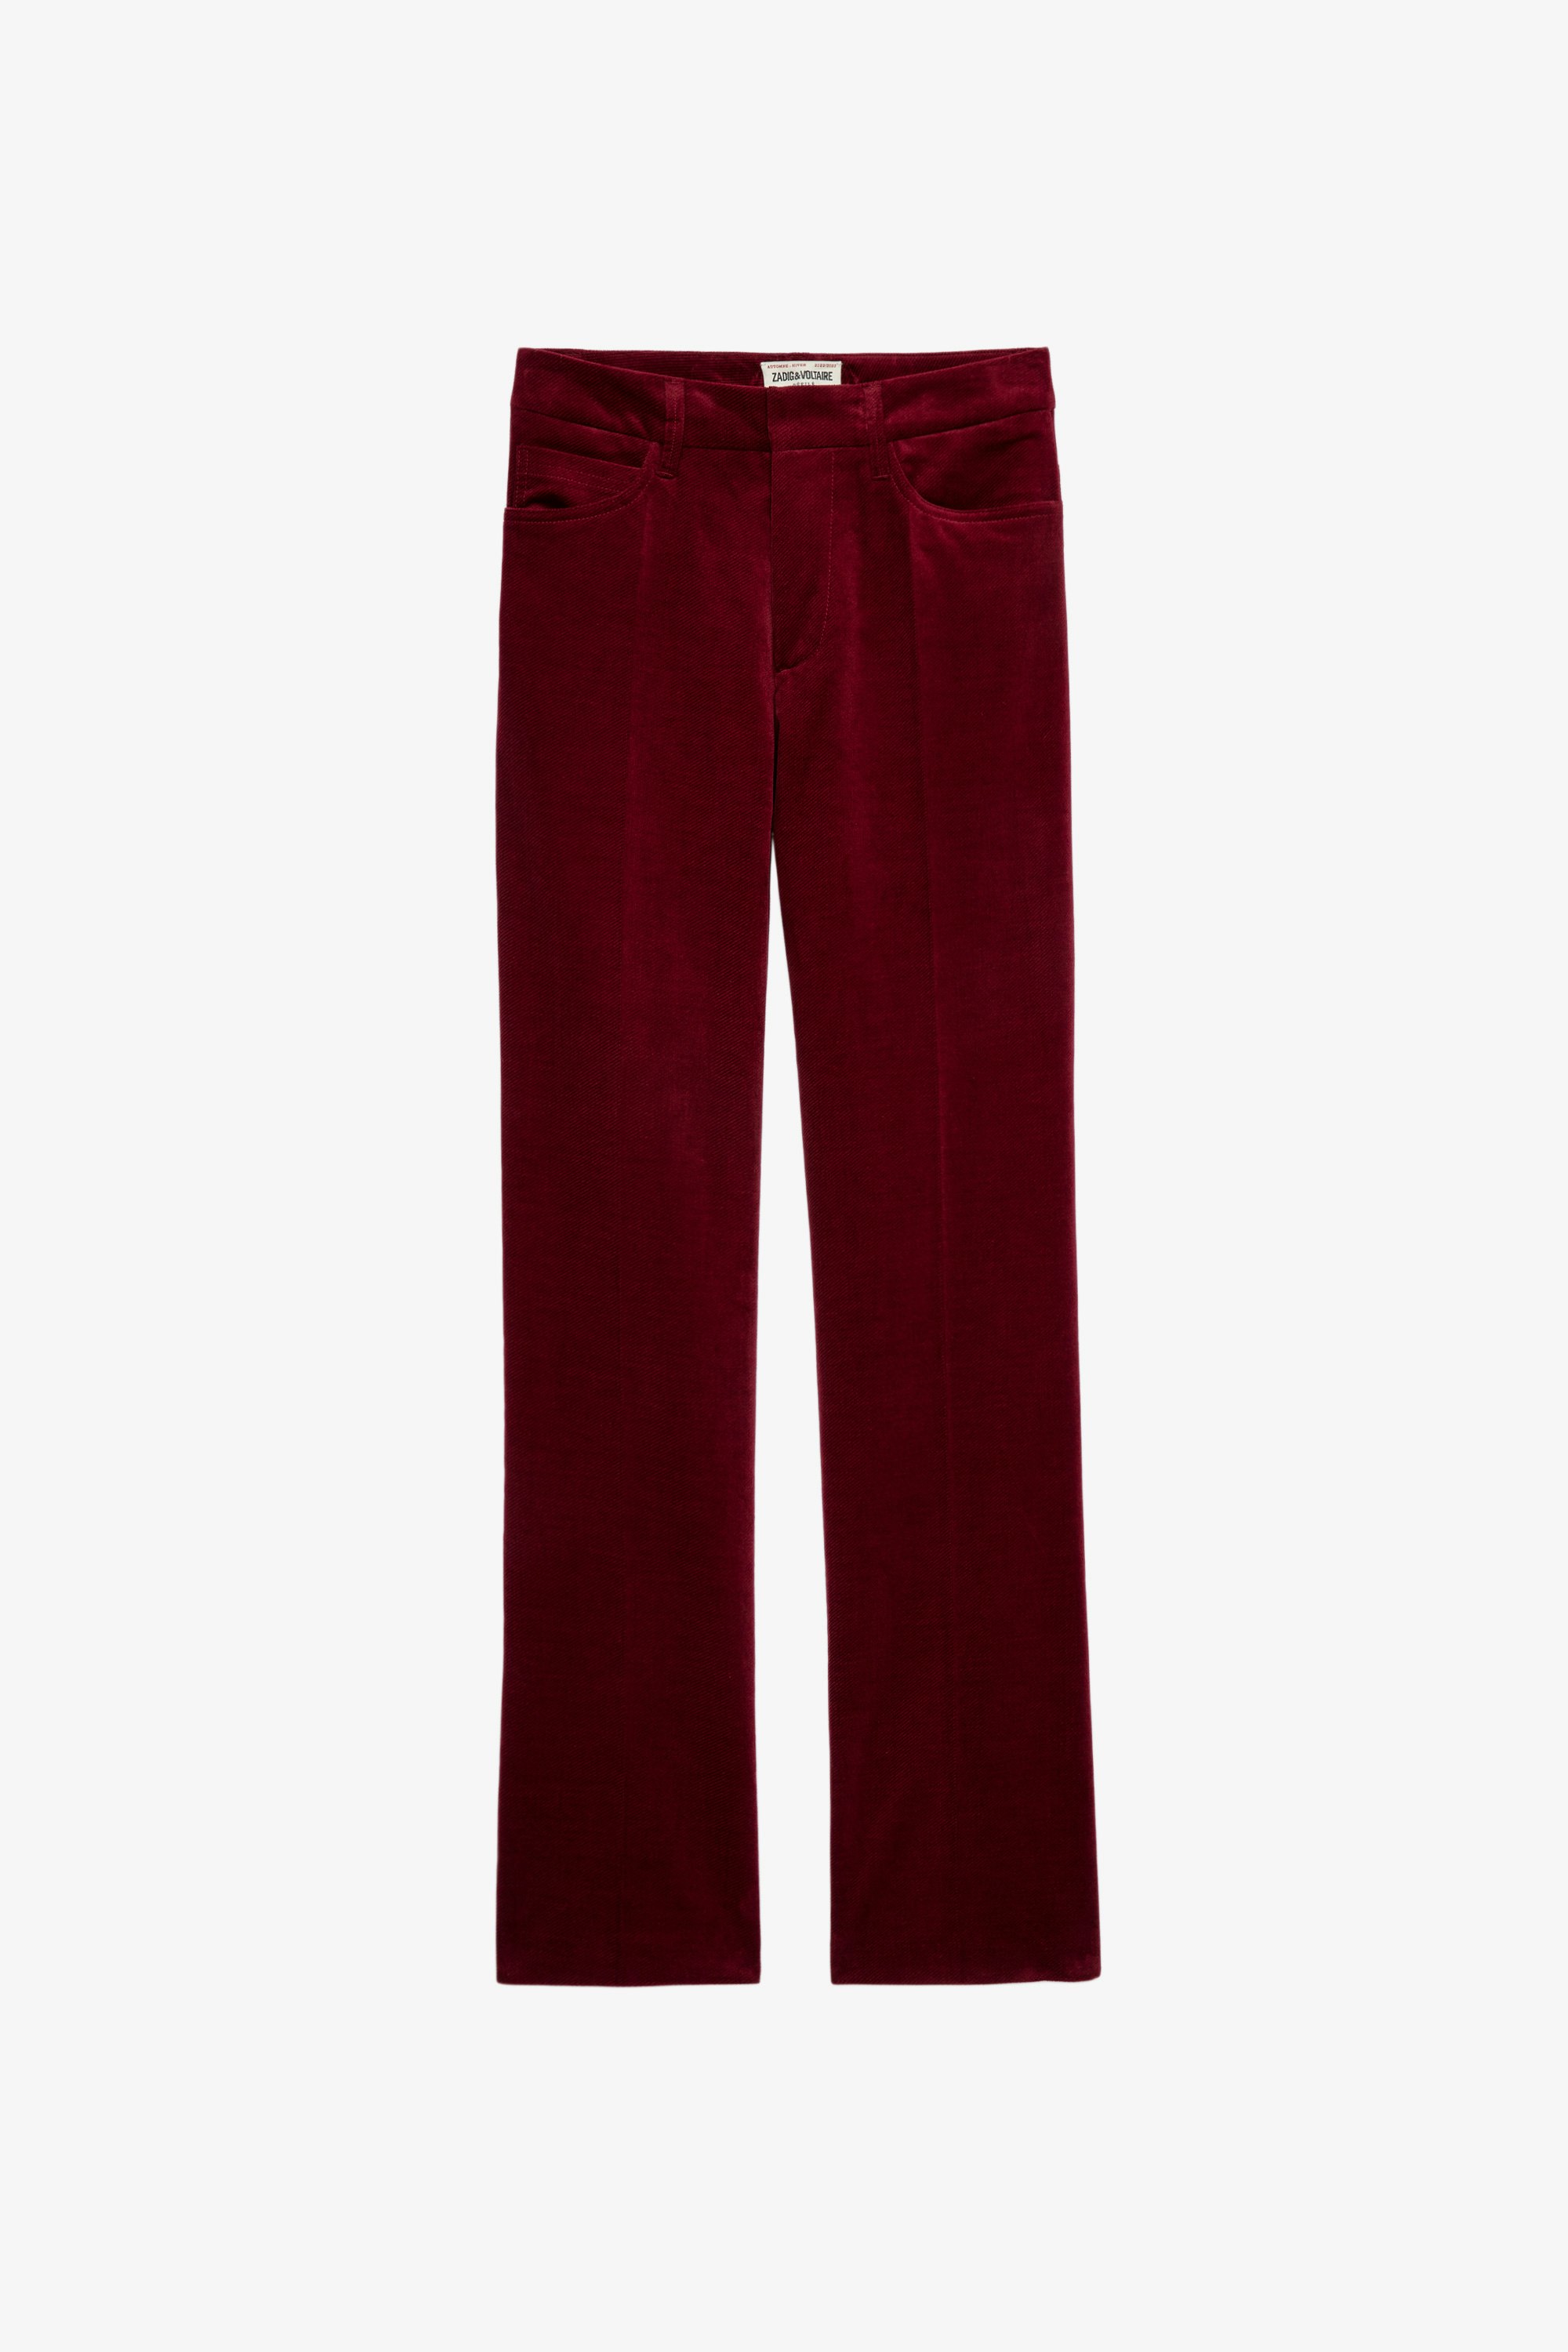 Pesto Velvet Trousers Women's red velvet wide-leg trousers